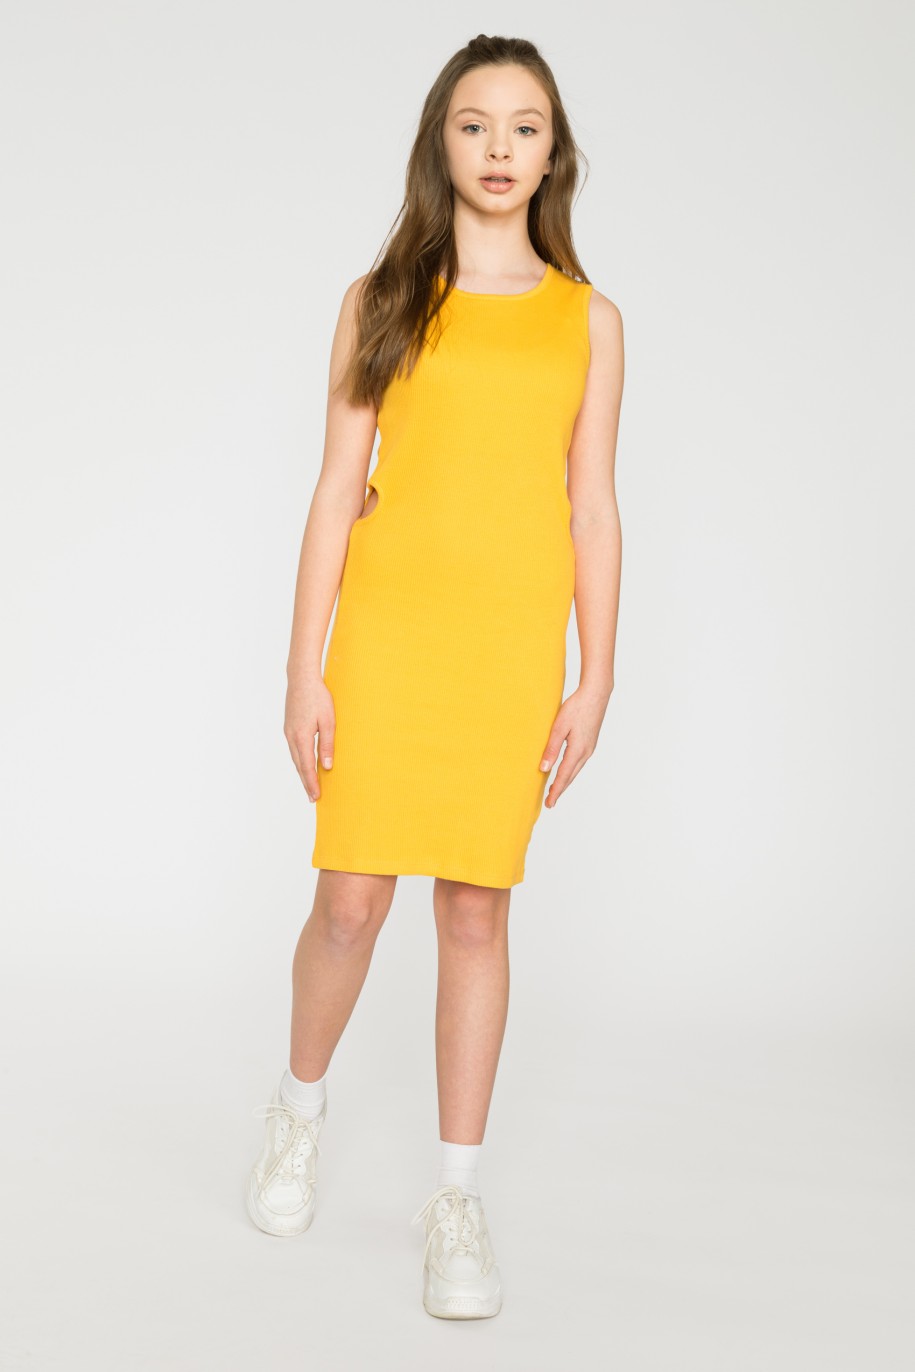 Żółta krótka sukienka z wycięciami - 34641